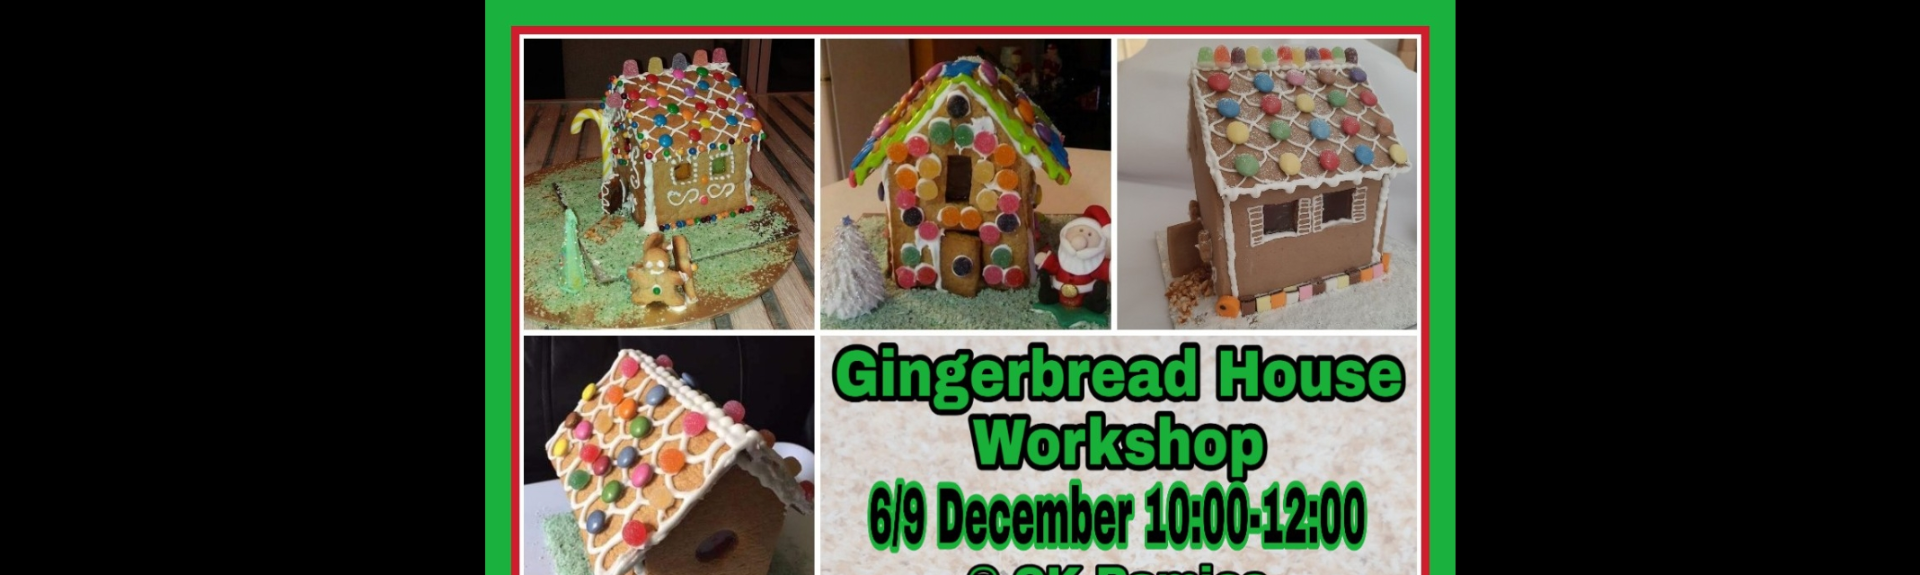 Gingerbread house workshop